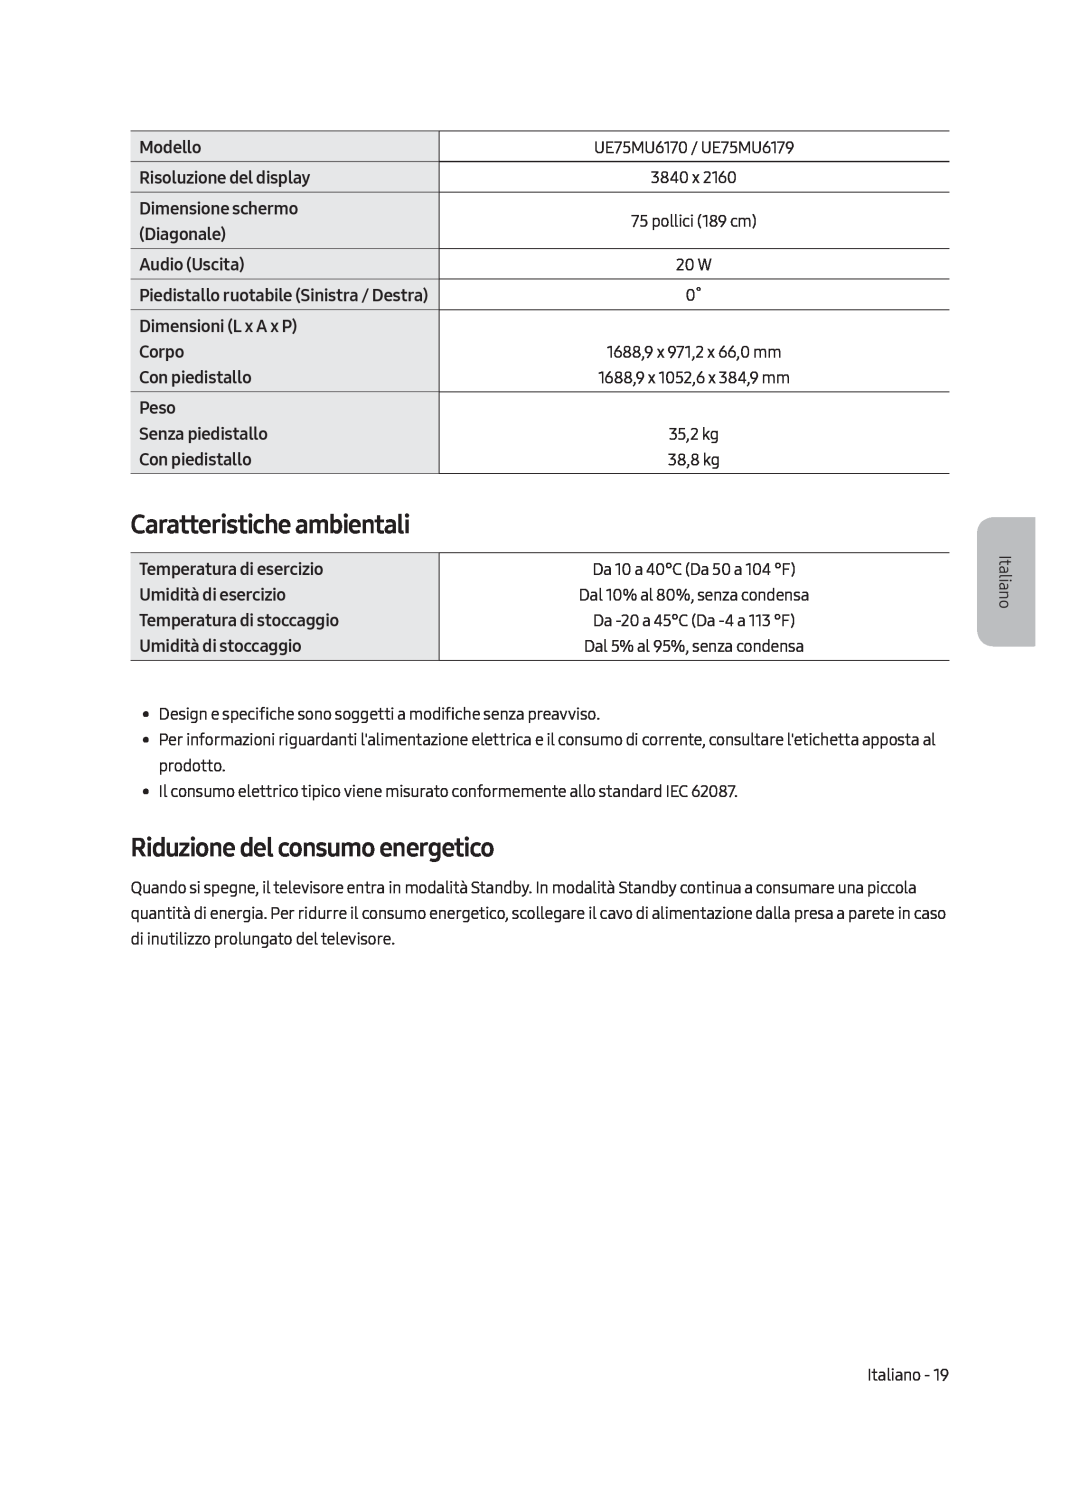 Samsung UE50MU6170UXZG manual Caratteristiche ambientali, Riduzione del consumo energetico, Dal 10% al 80%, senza condensa 